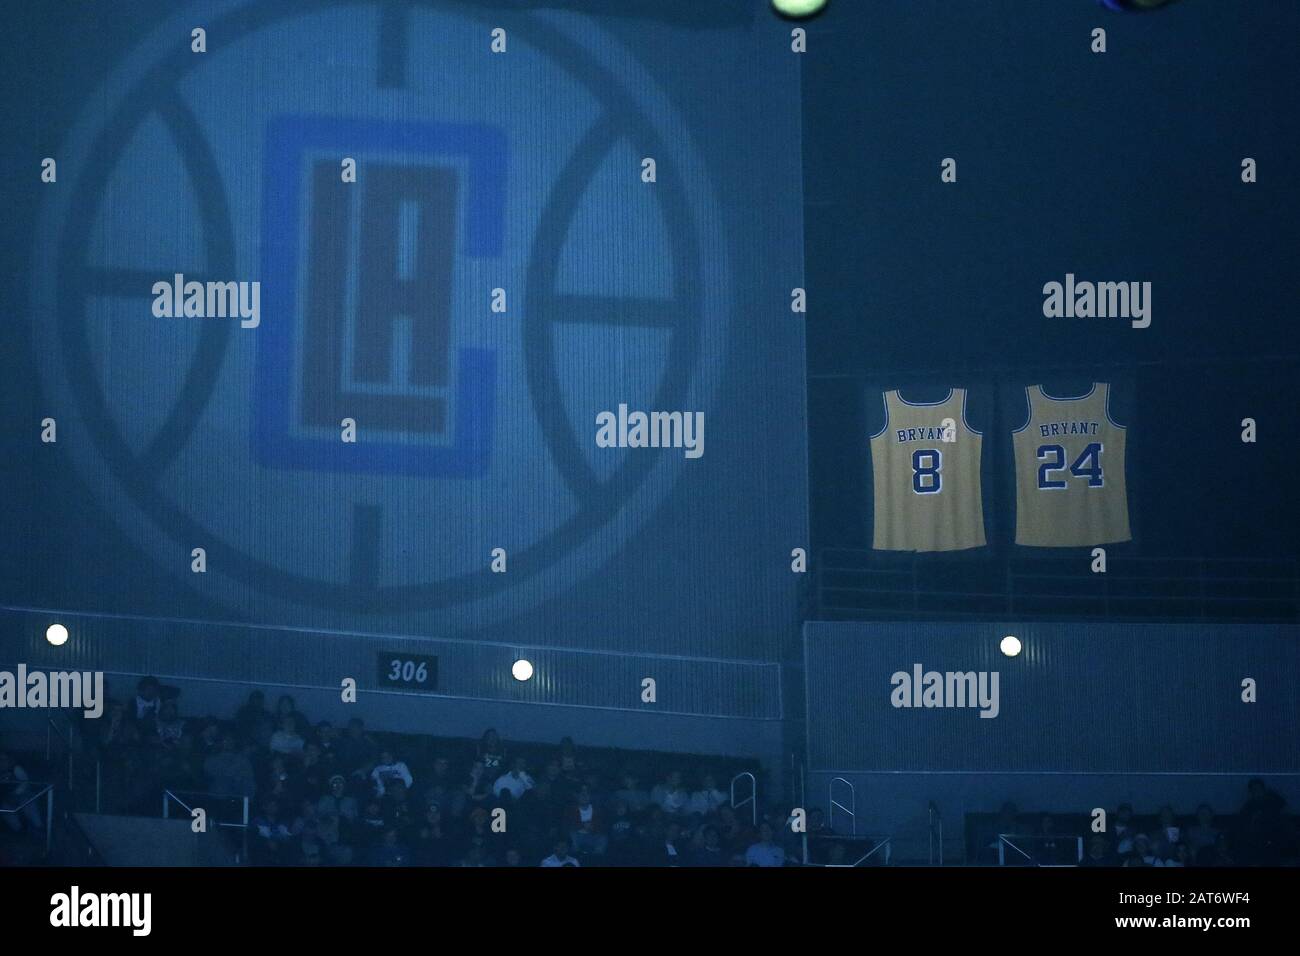 Los Ángeles, California, Estados Unidos. 30 de enero de 2020. Las camisetas retiradas de finales de los Angeles Kobe Bryant cuelga la arena a un logo proyectado de los